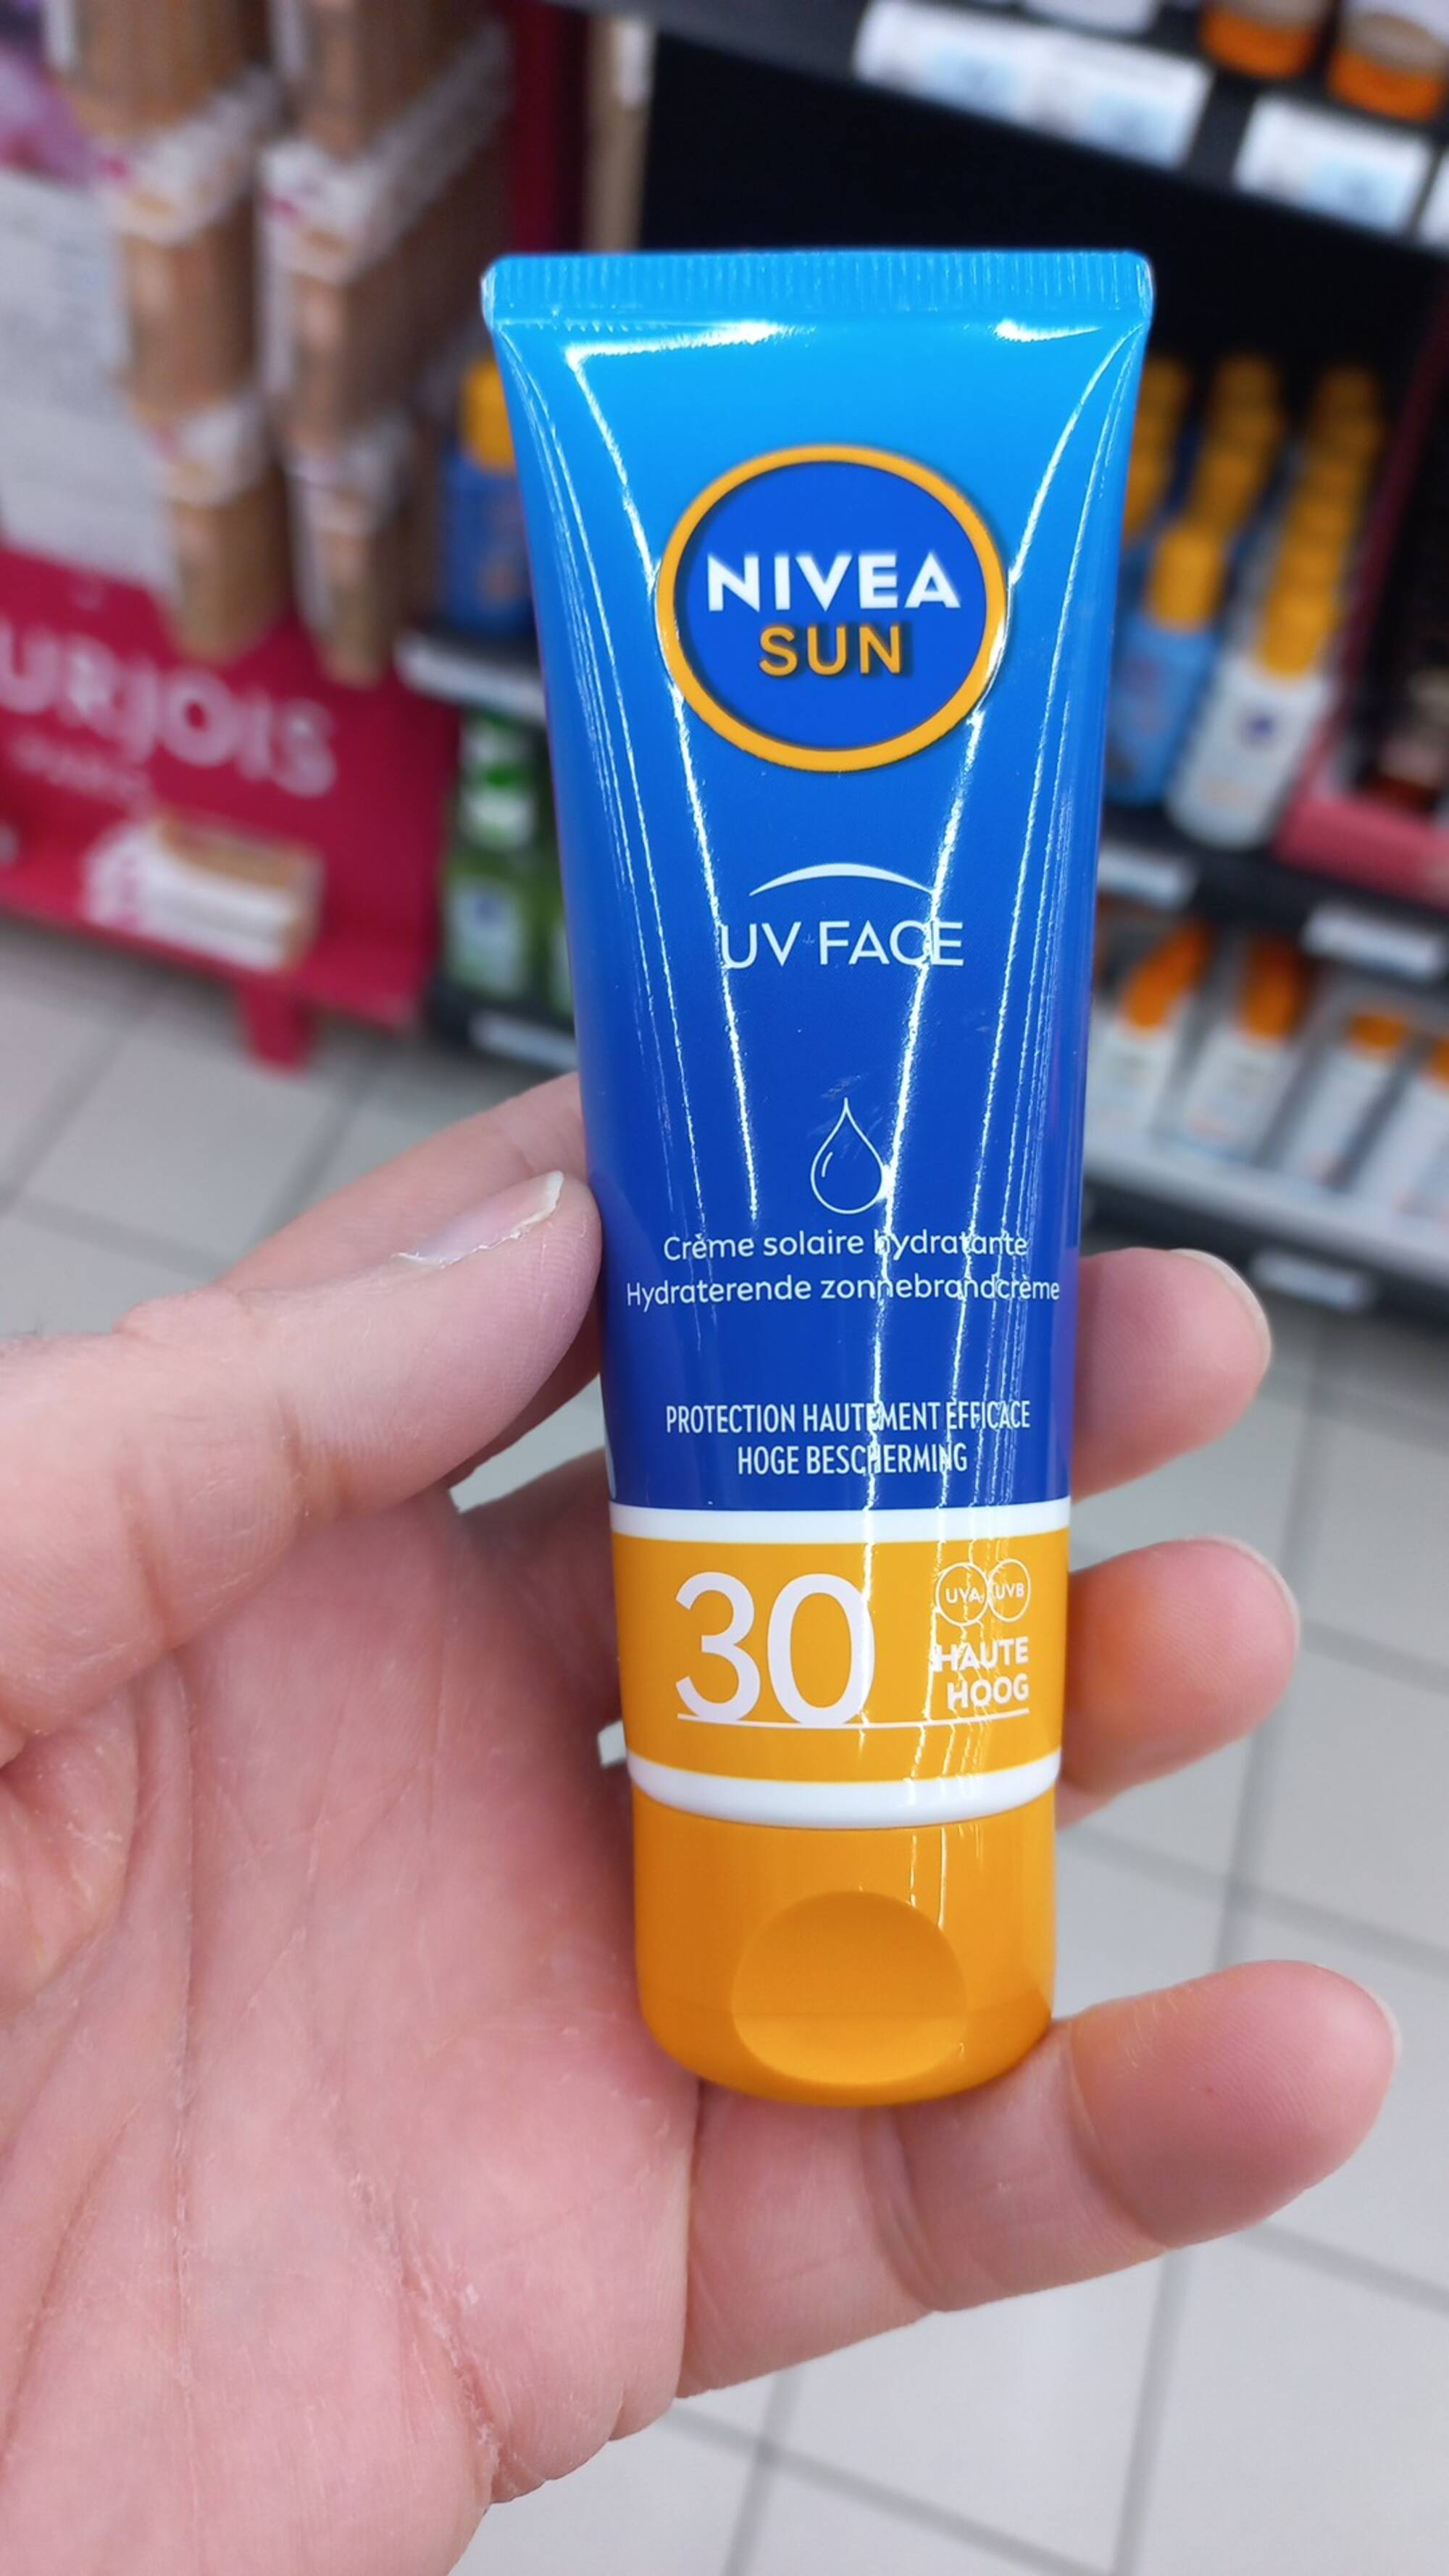 NIVEA SUN - Crème solaire hydratante UV face